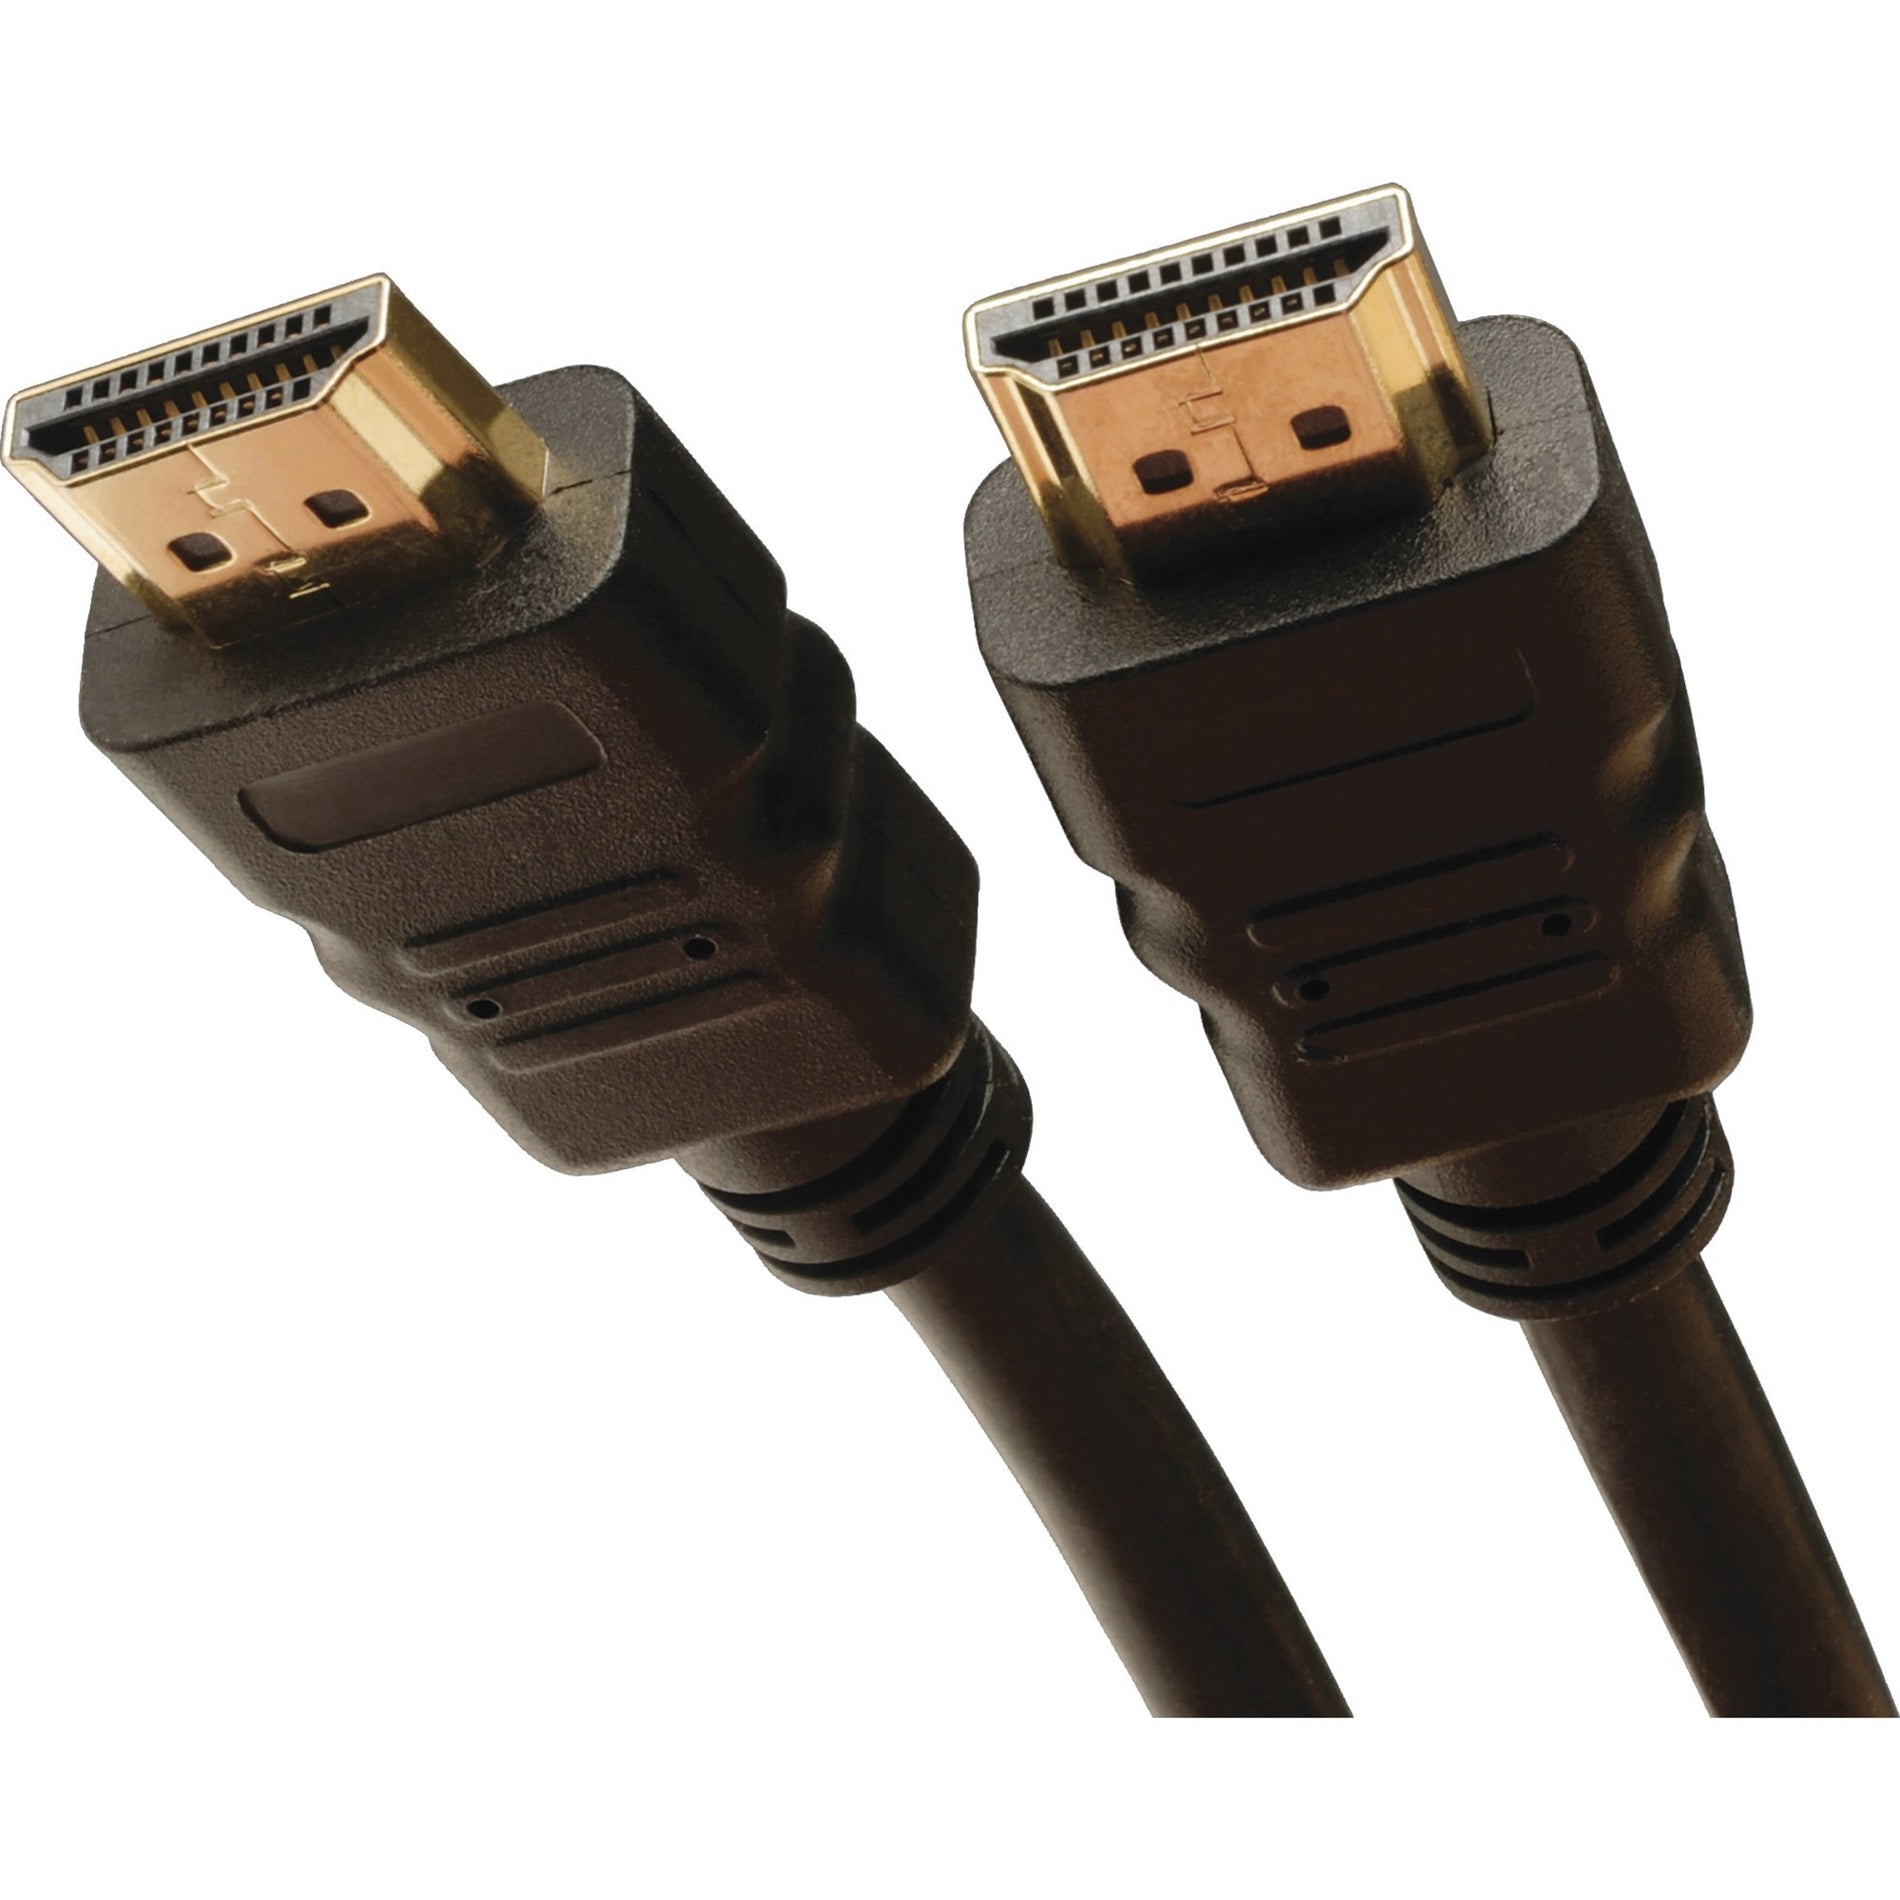 Tripp Lite P569-025 Cable HDMI de alta velocidad con Ethernet 25 pies moldeado conectores bañados en oro velocidad de transferencia de datos de 18 Gbit/s resolución admitida de 3840 x 2160